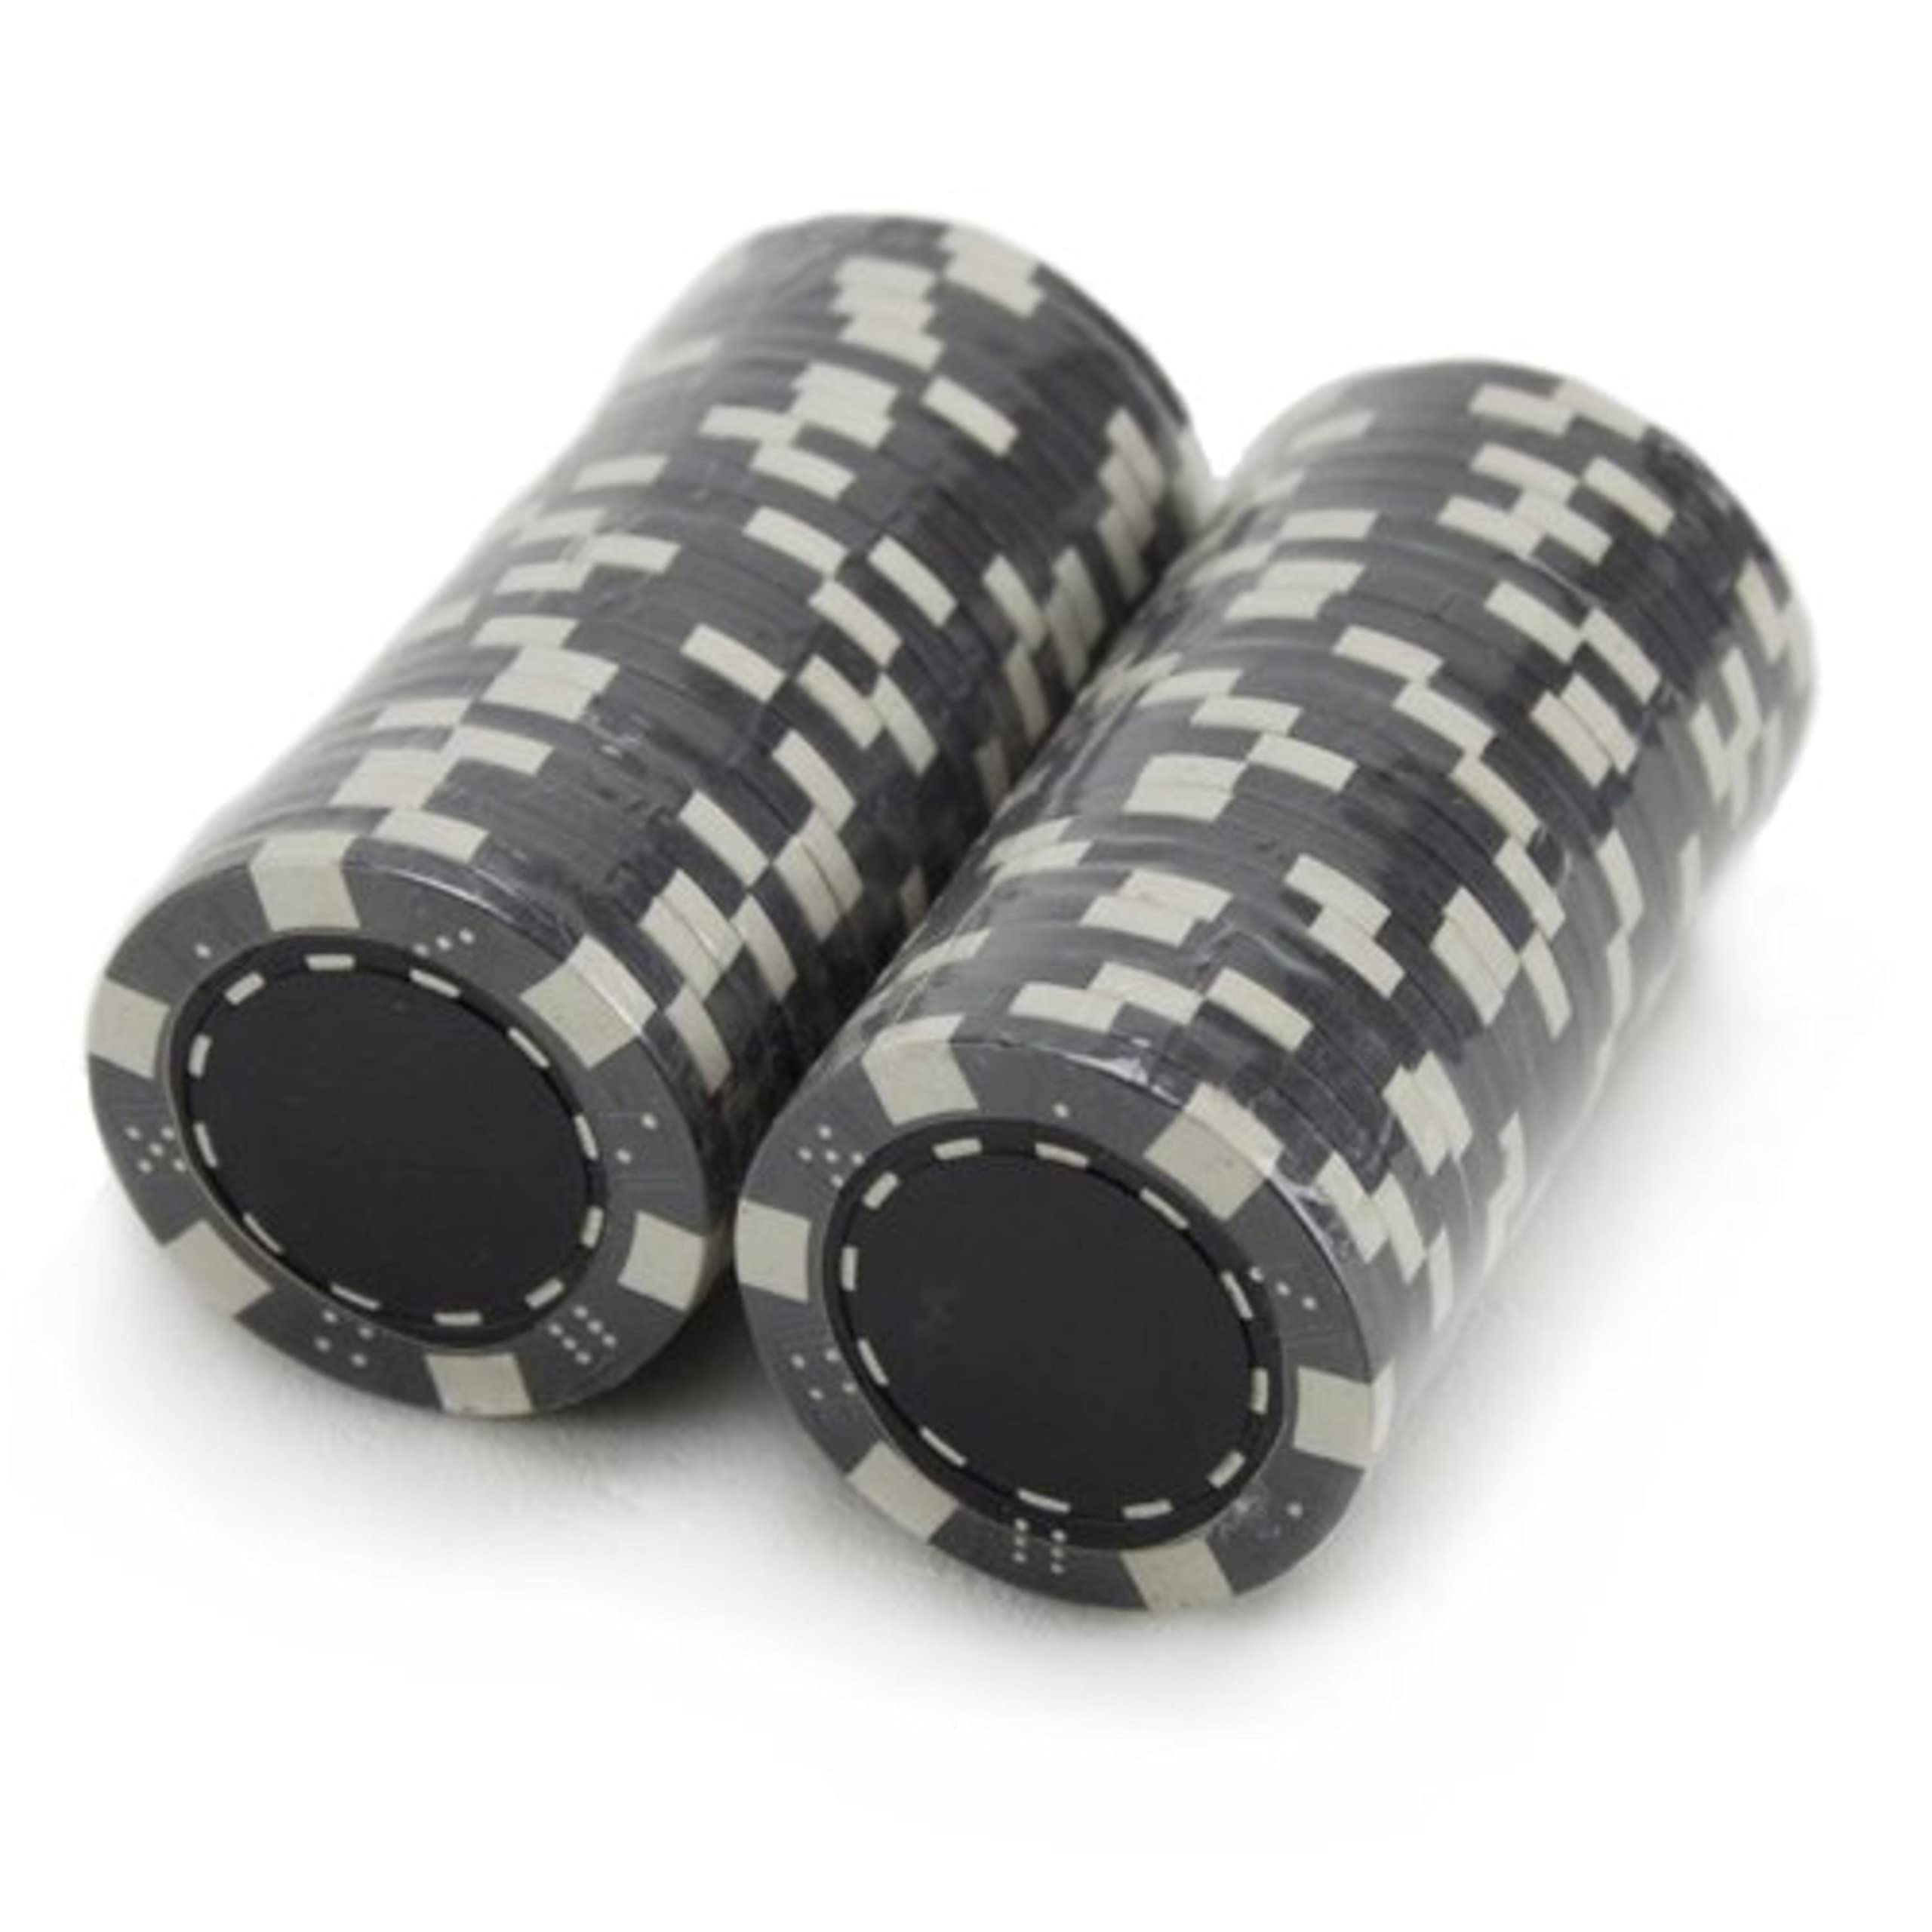 Striped Dice 11.5-gram Poker Chips (25-pack)